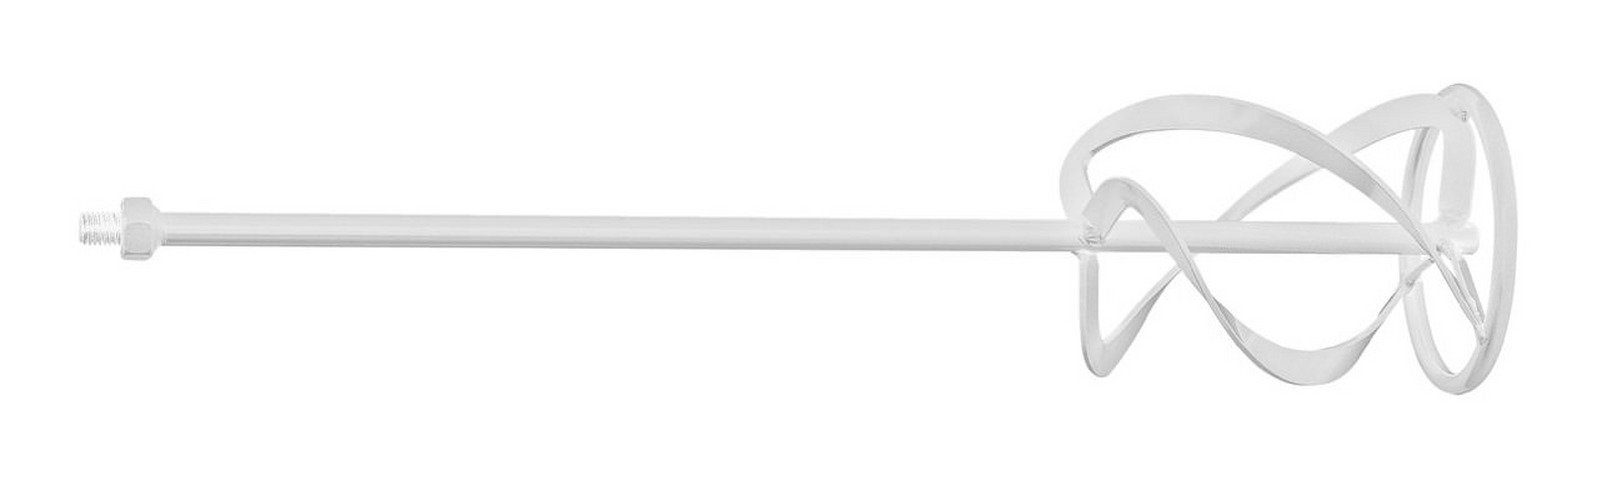 L: RS-R3 mm 3 160 cm, Rührstab, Rechtswendeln 59 metabo Typ